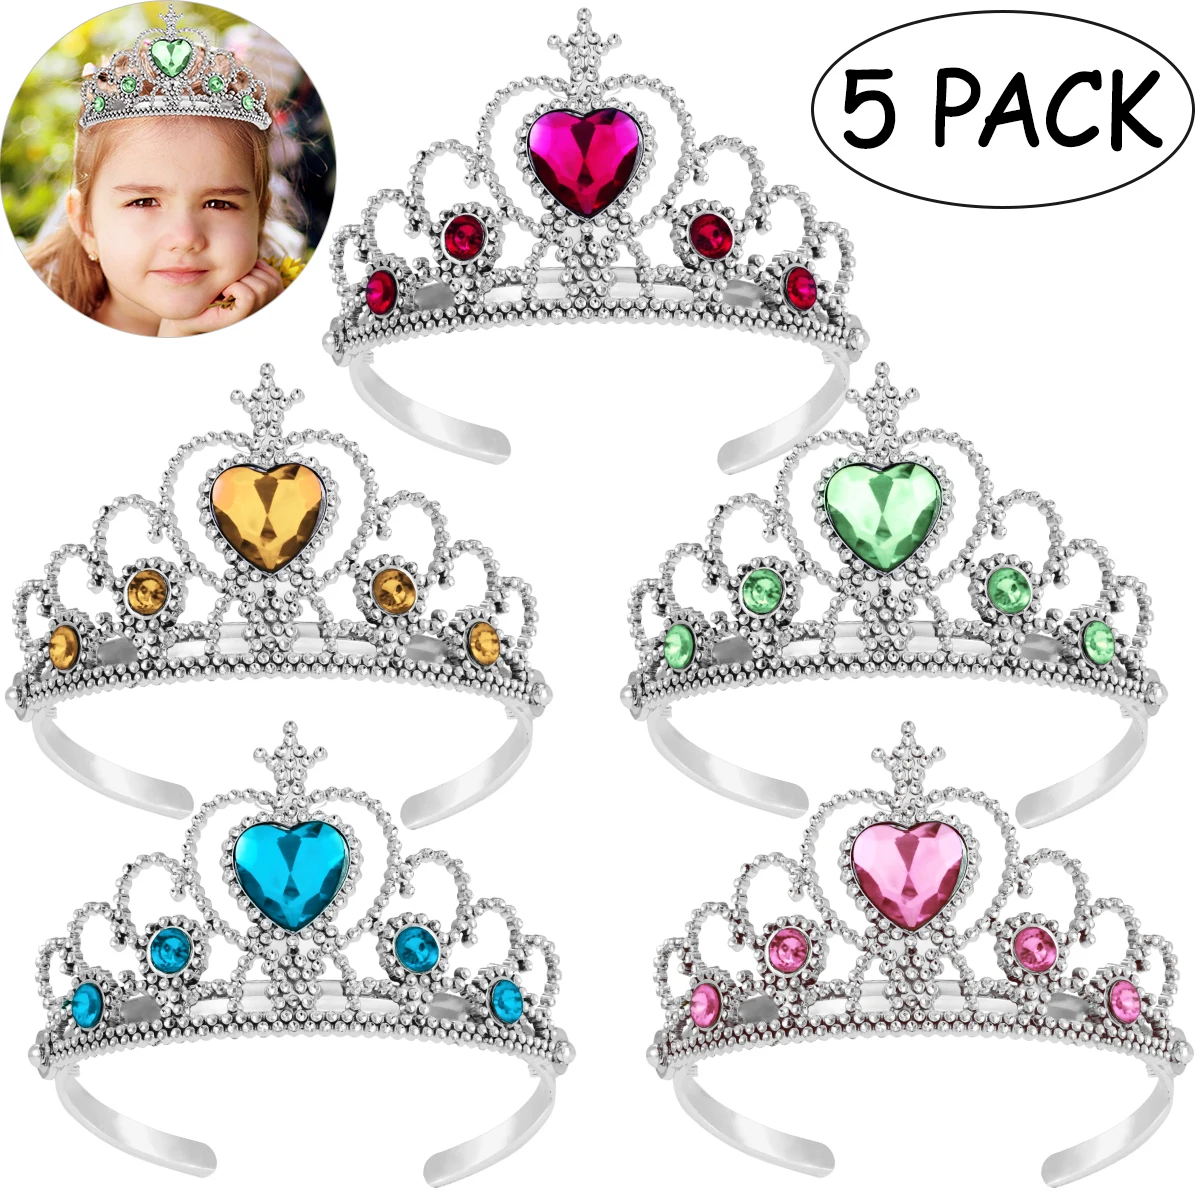 5pcs Cute Kids Tiara Crown Set Girls Dress up Party Headband Accessories Queen Princess Headdress Festive Children Headwear